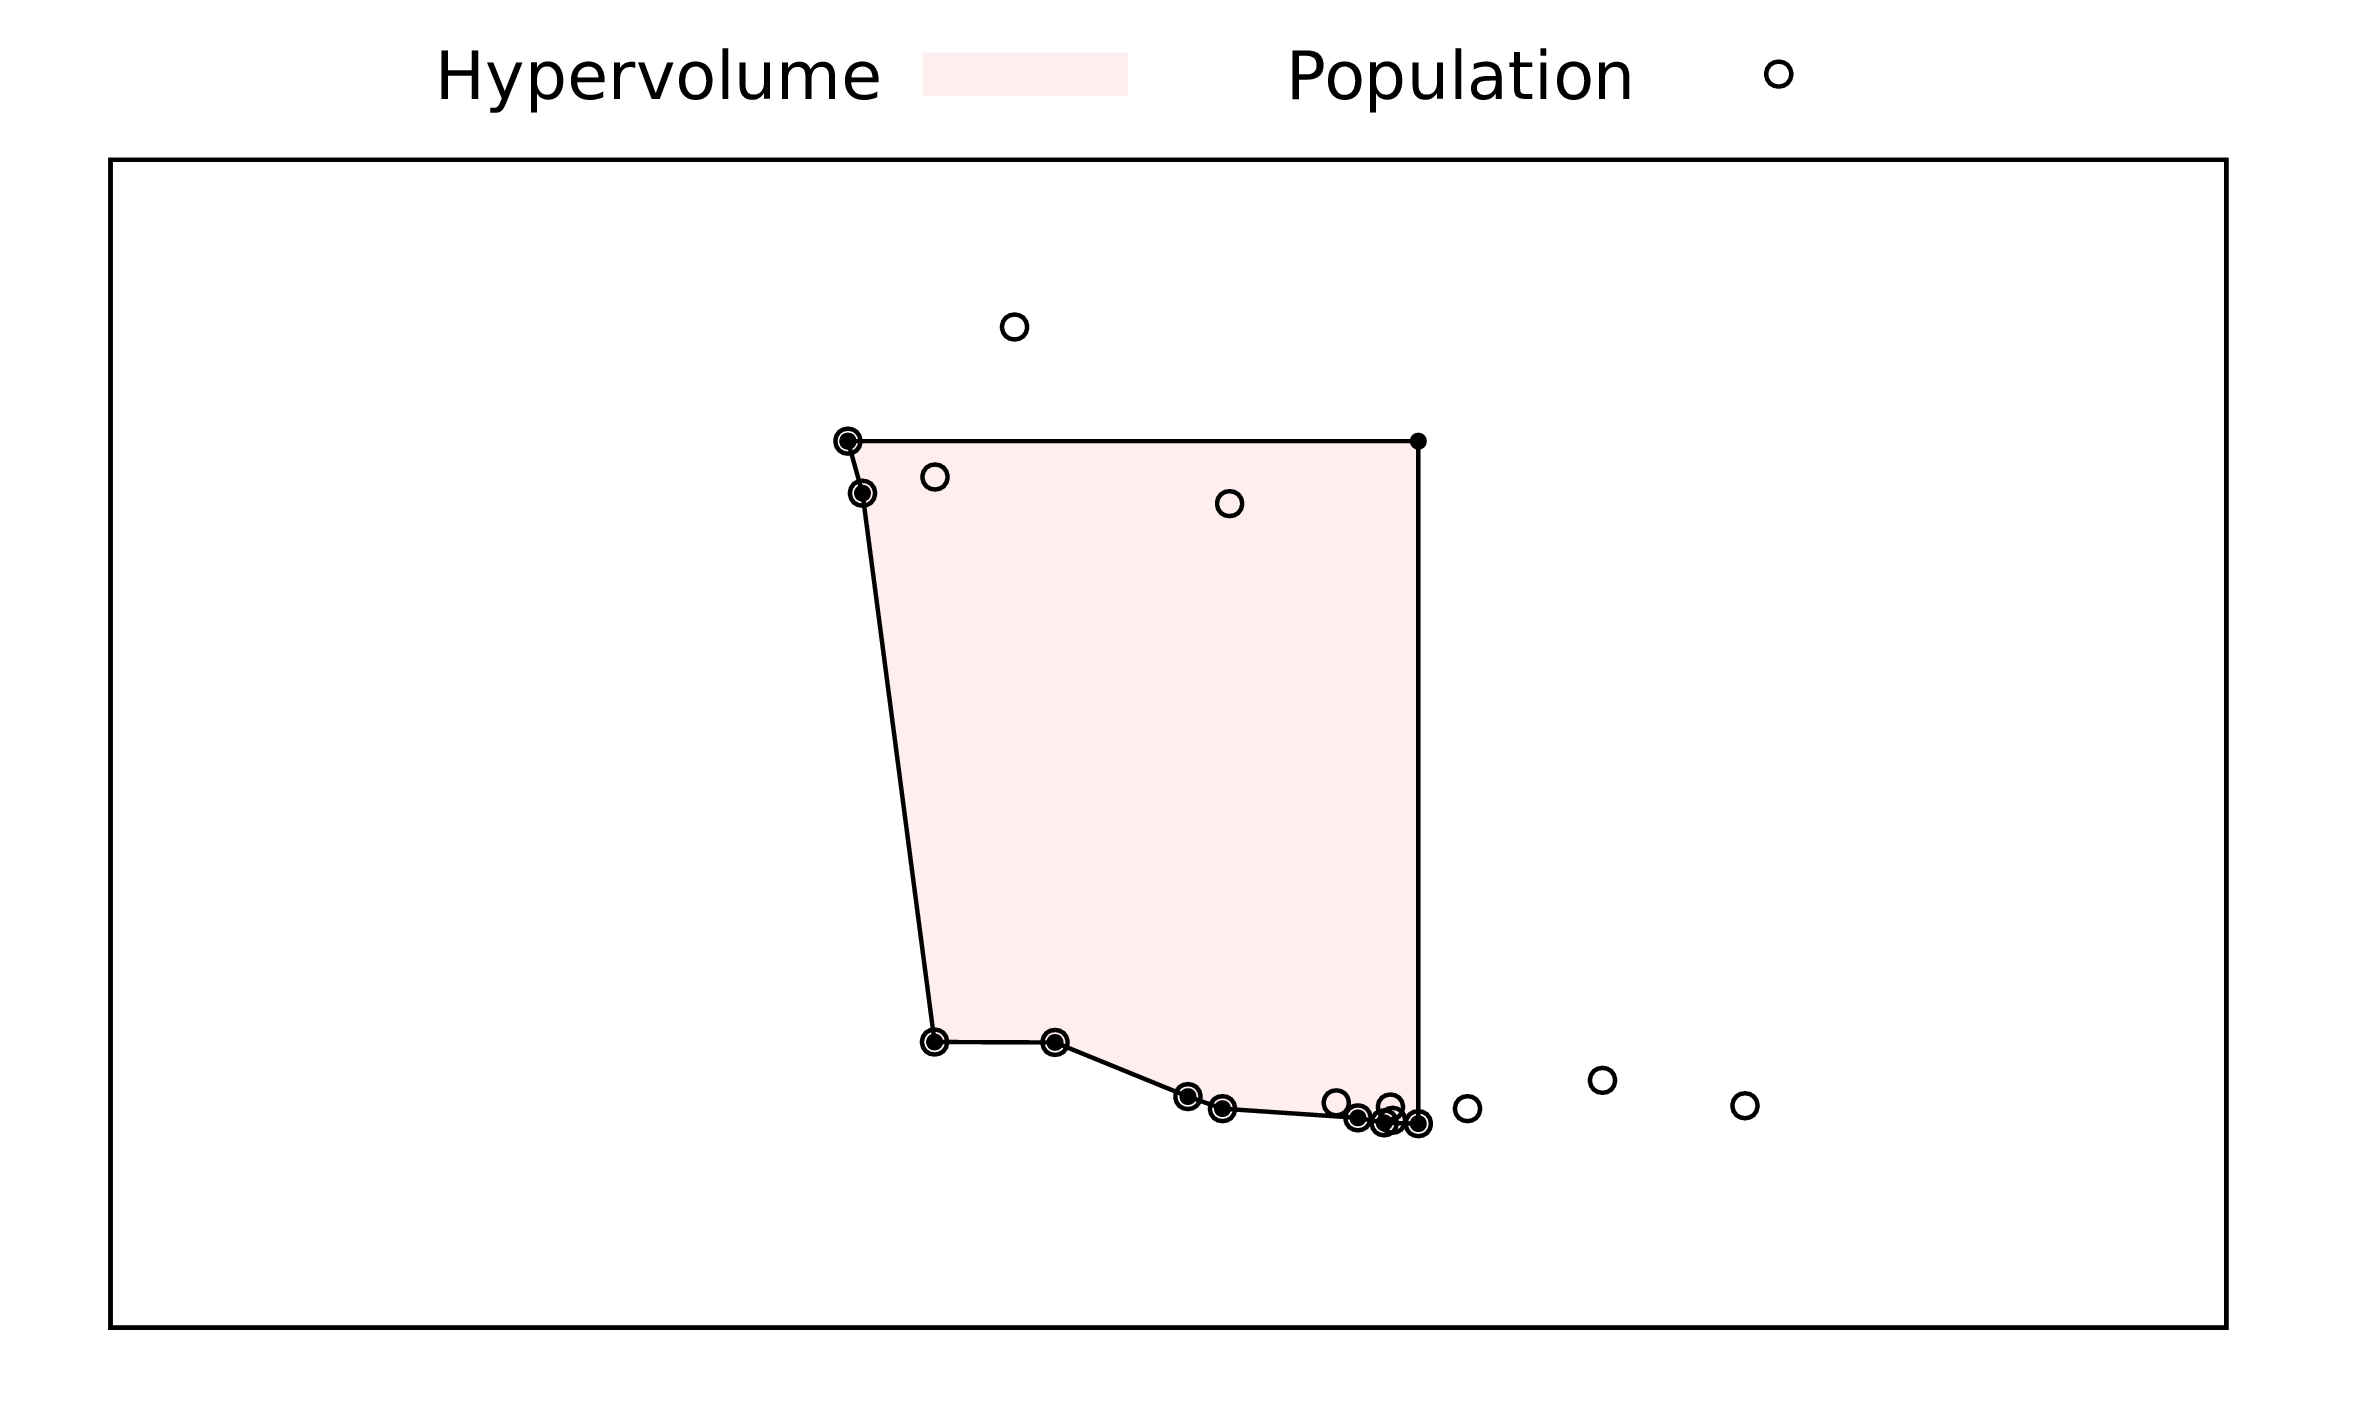 Illustration of hyper-volume